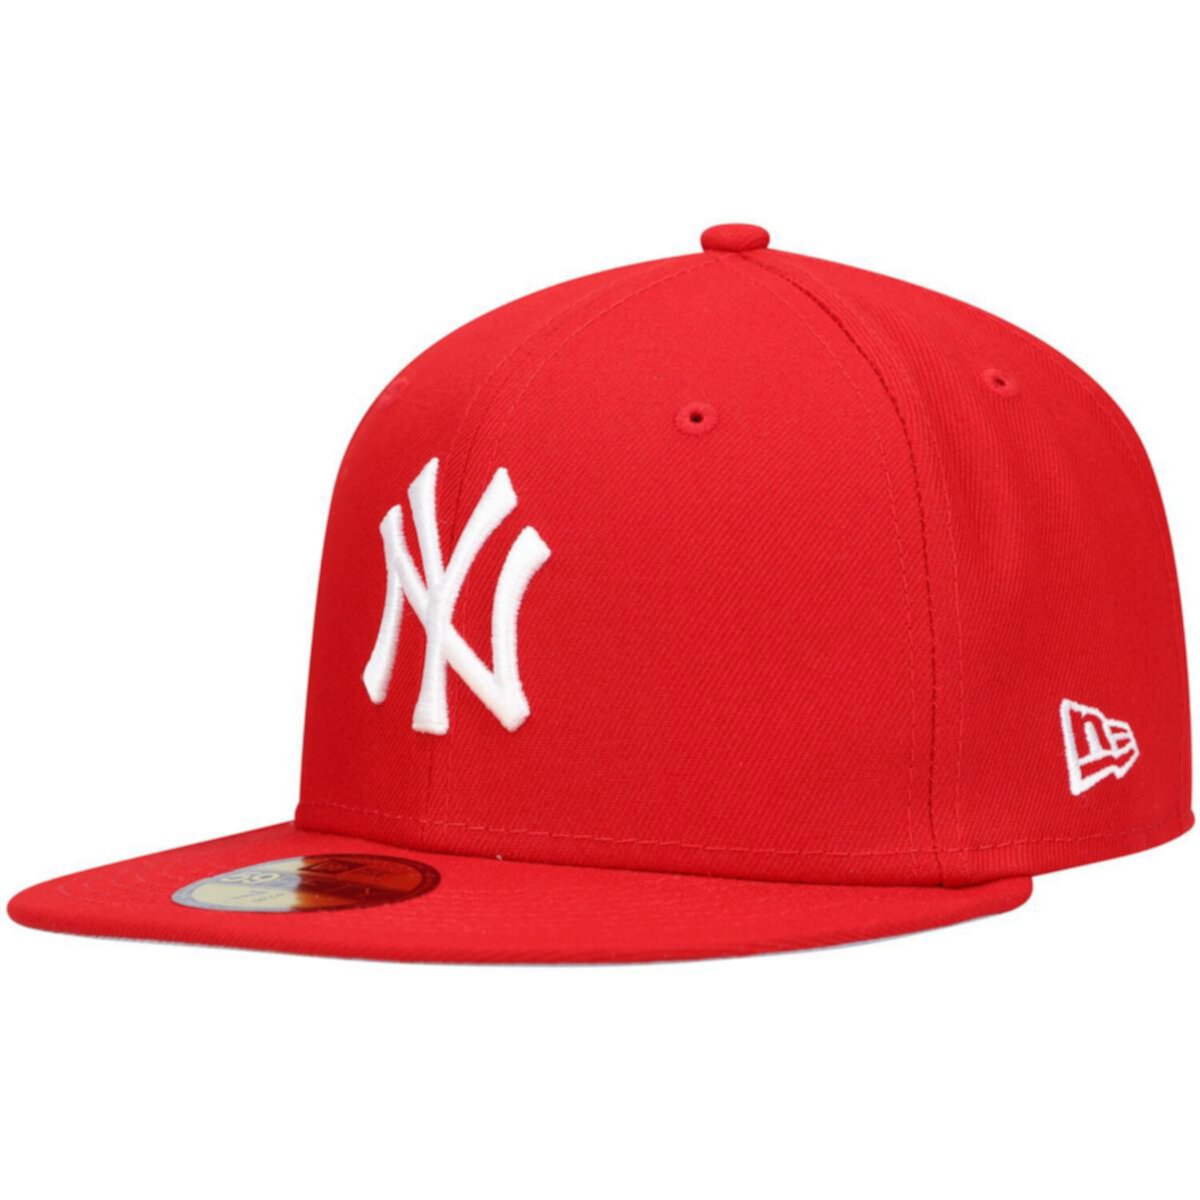 Мужская белая шляпа New Era Red New York Yankees с логотипом 59FIFTY New Era